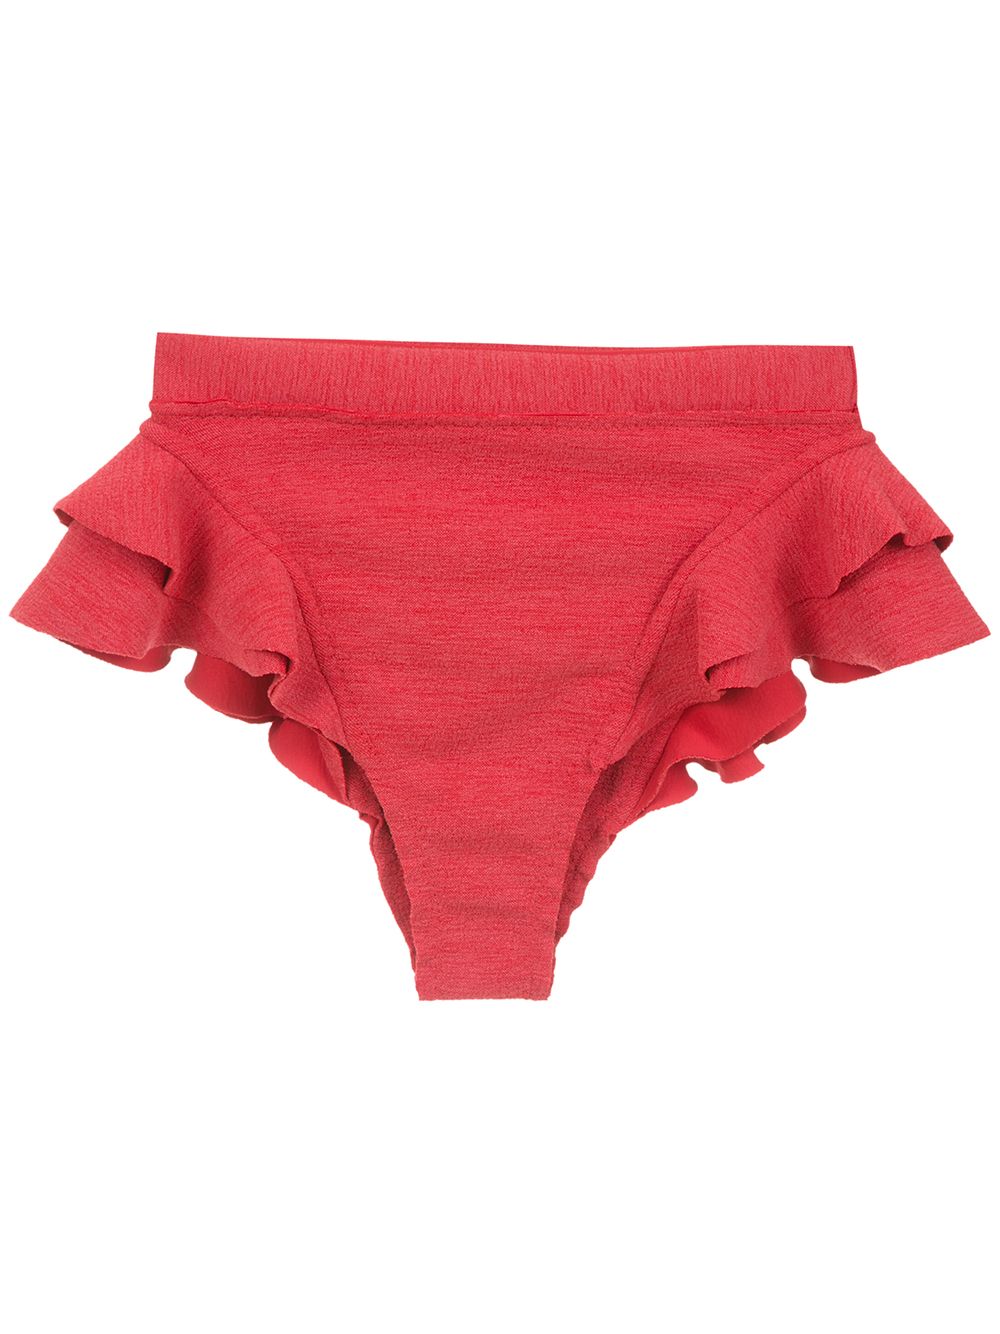 Clube Bossa Turbe bikini bottoms - Red von Clube Bossa